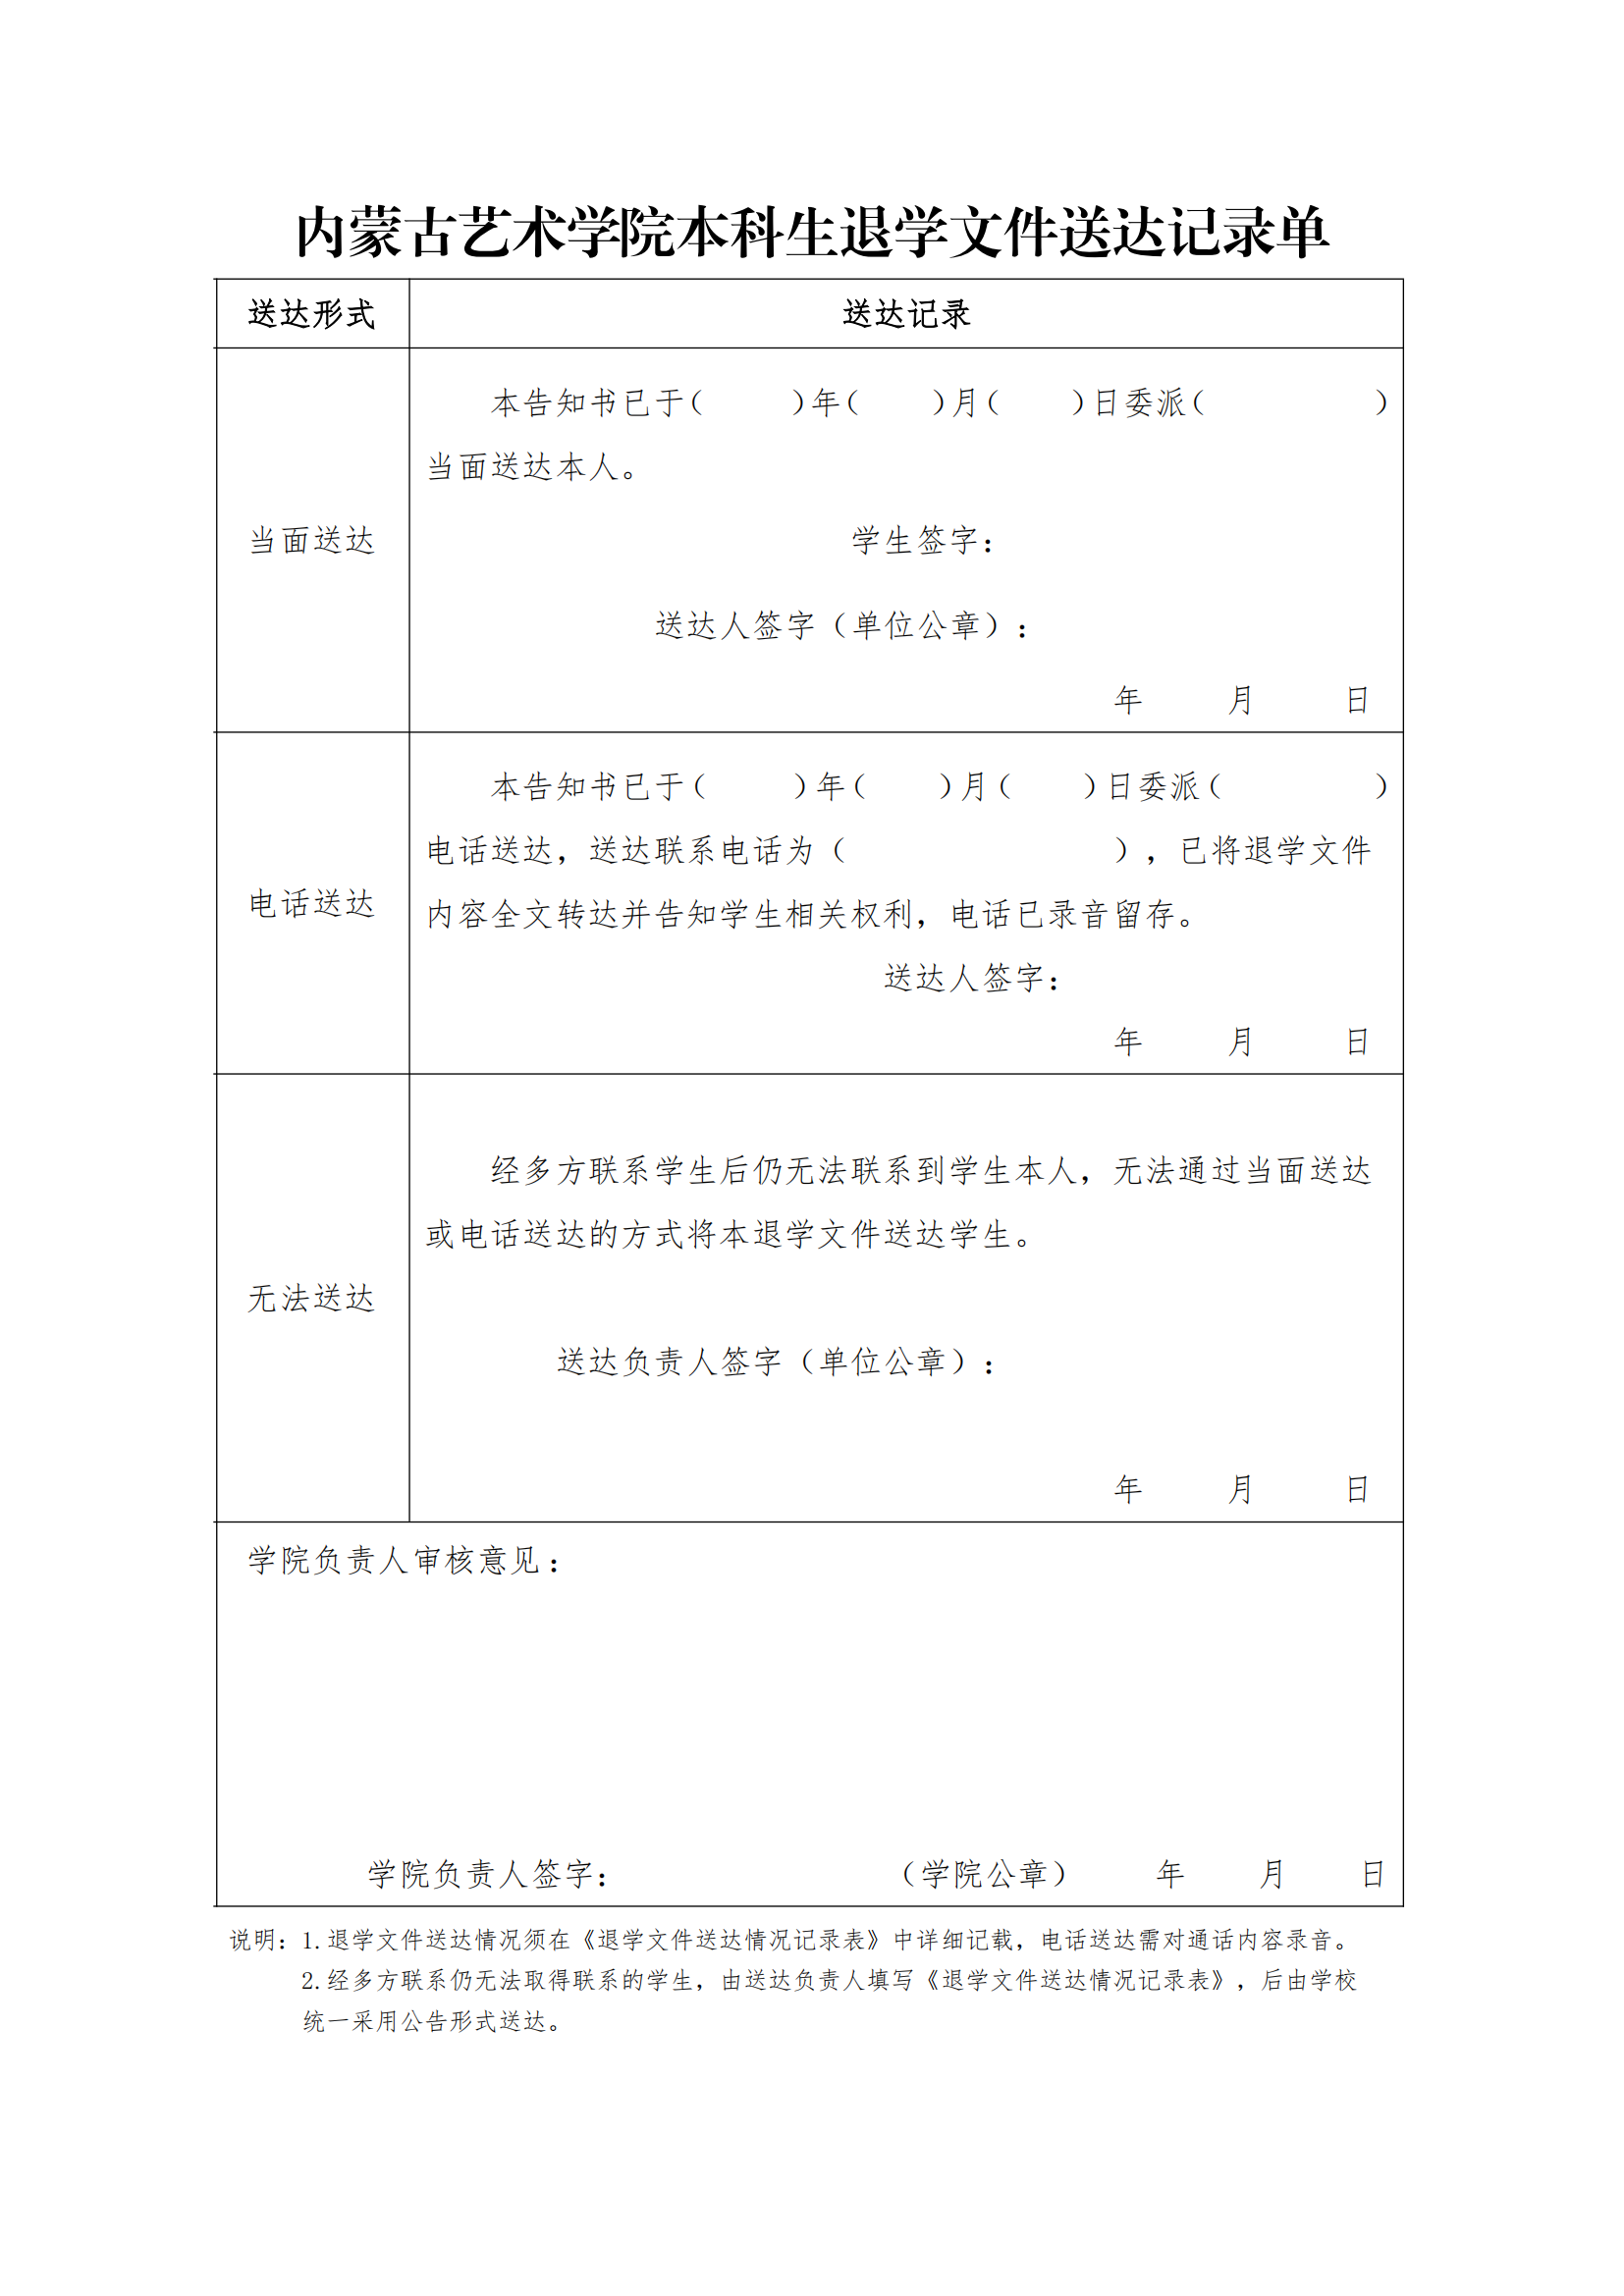 4.退学工作流程与申请表_02.png